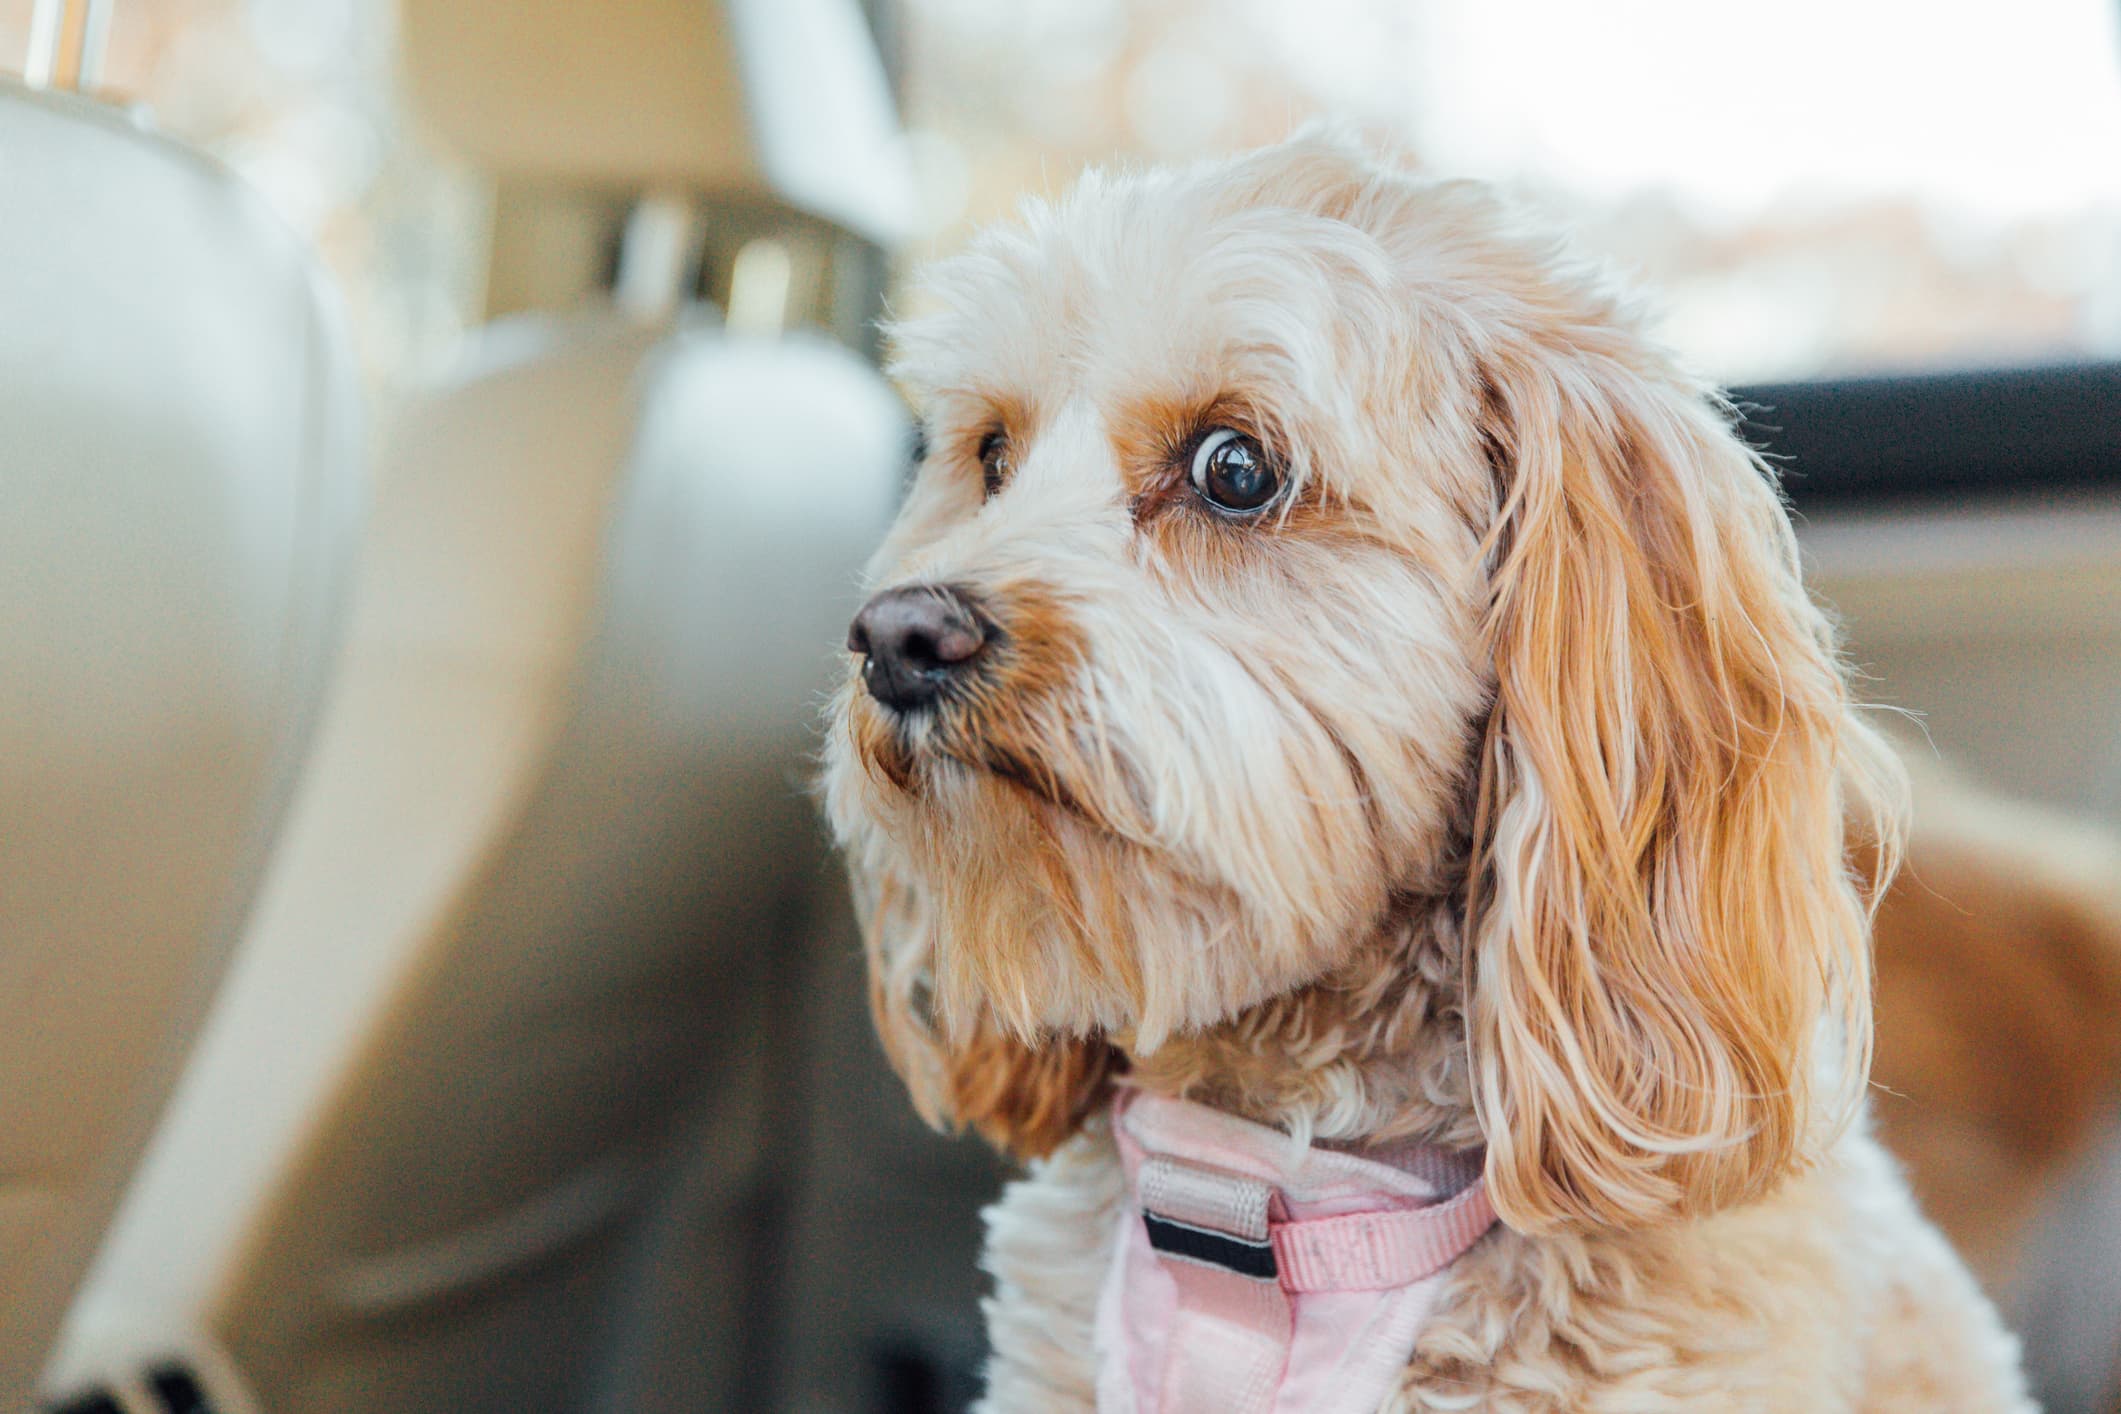 Um cachorro de pelo bege e olhos escuros com mancha de lágrima ácida em volta dos olhos, sentado no banco de trás do carro usando uma coleira rosa e fundo desfocado.